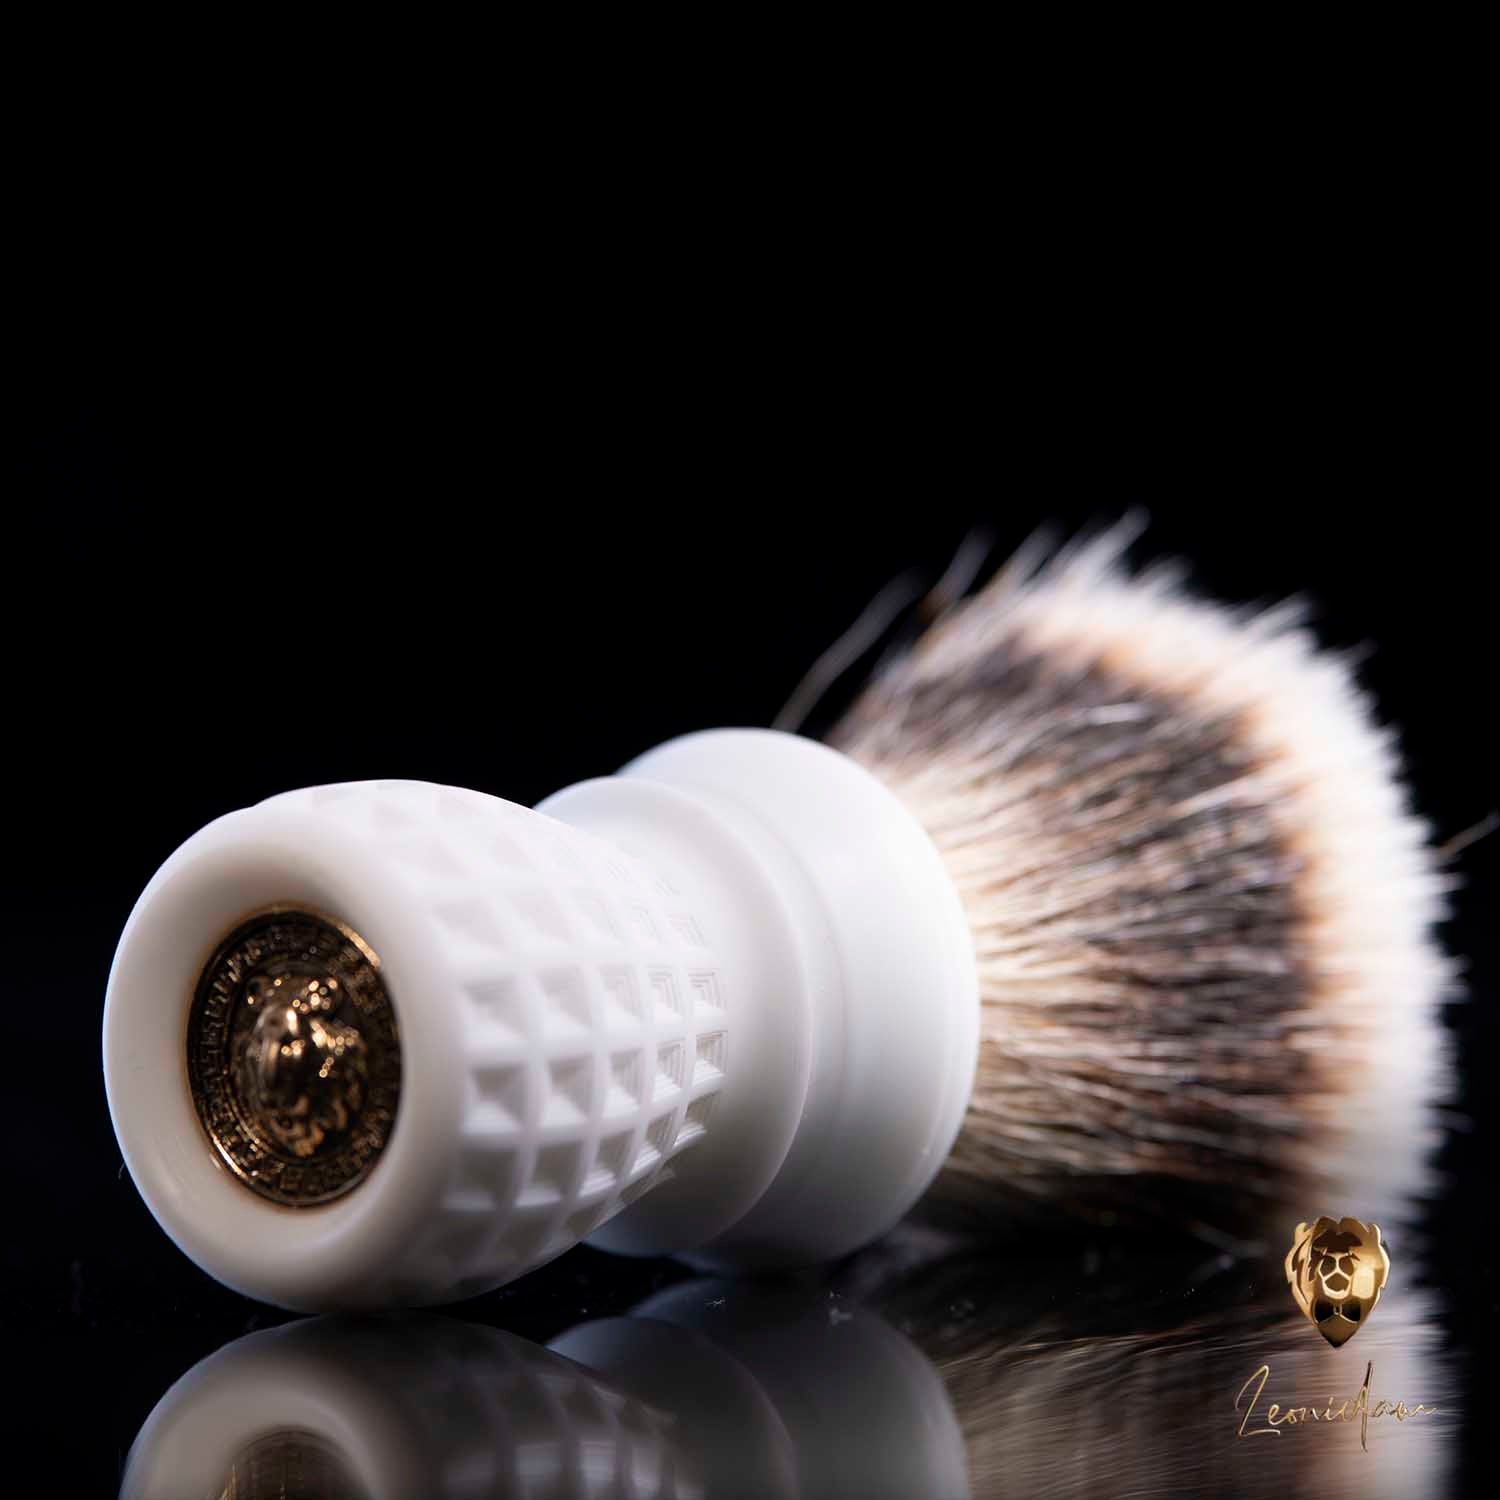 Handmade Shaving Brush "Pantheon" 28mm